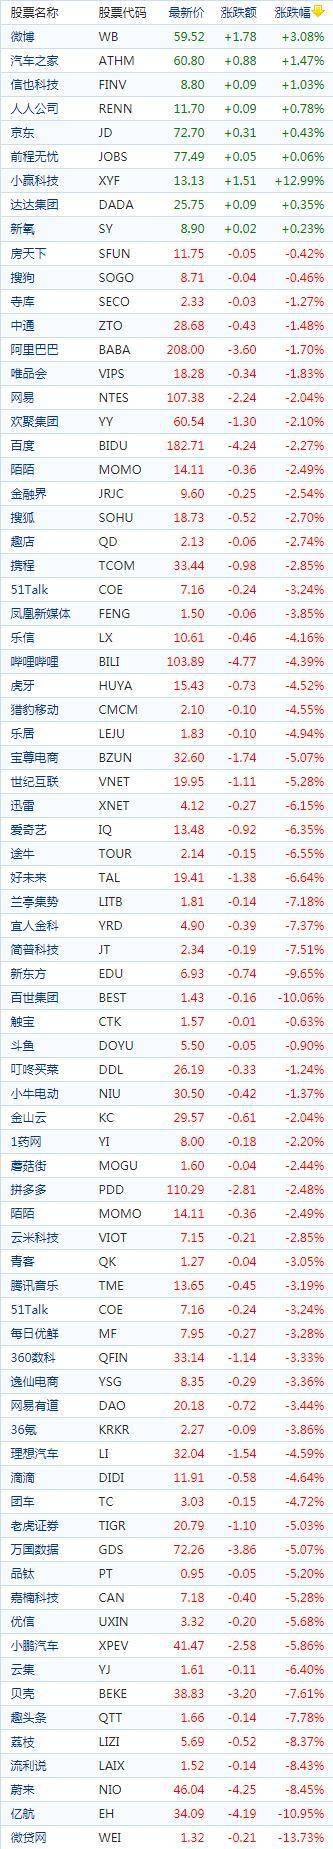 中国概念股周三收盘普遍下跌 阿里巴巴下跌1.70%报收208.00美元